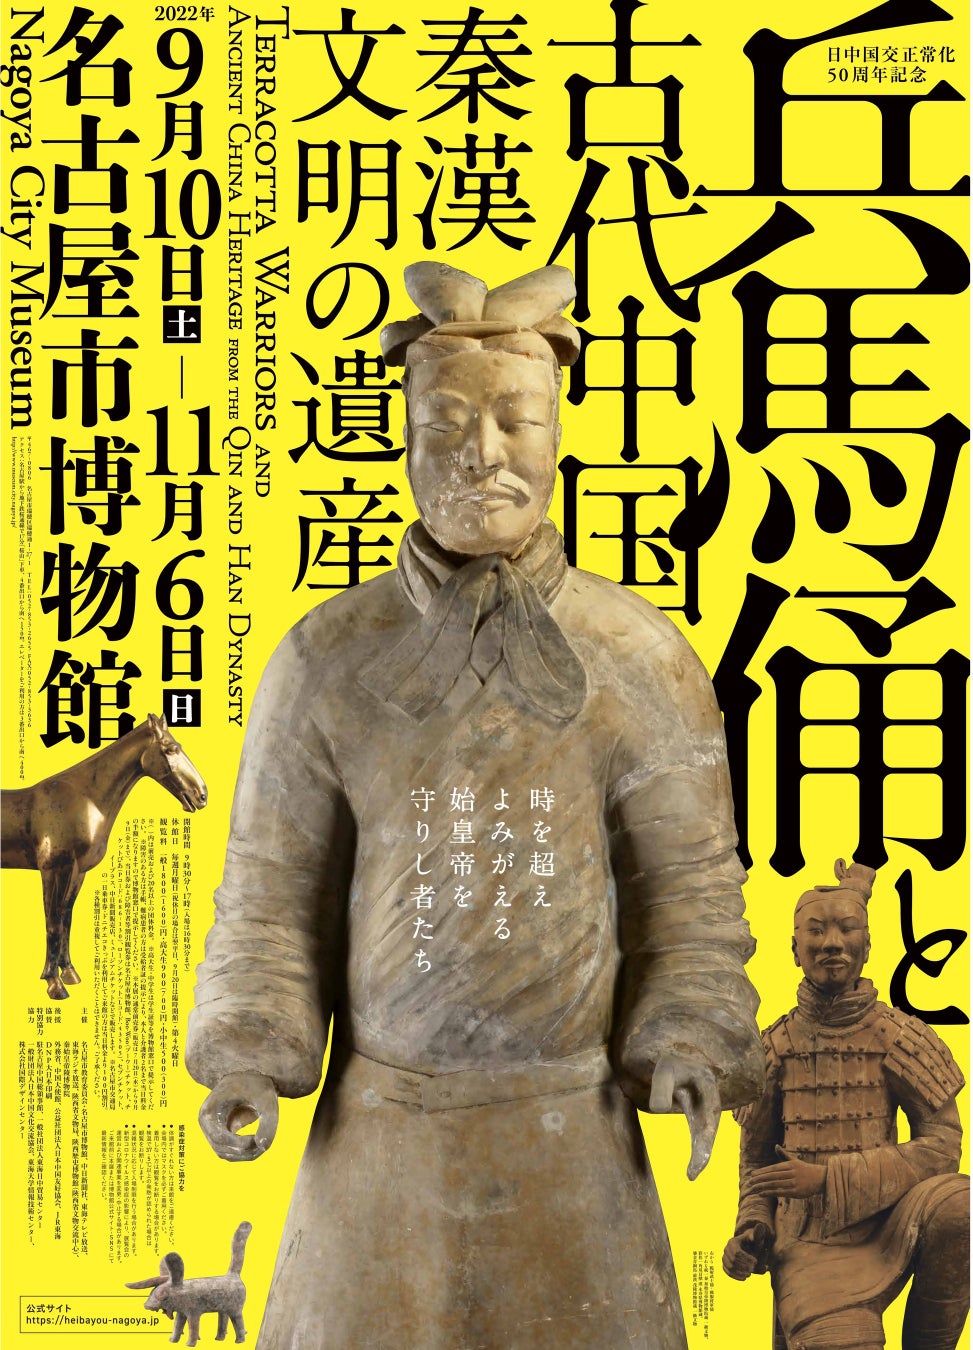 兵馬俑と古代中国　秦漢文明の遺産　開催